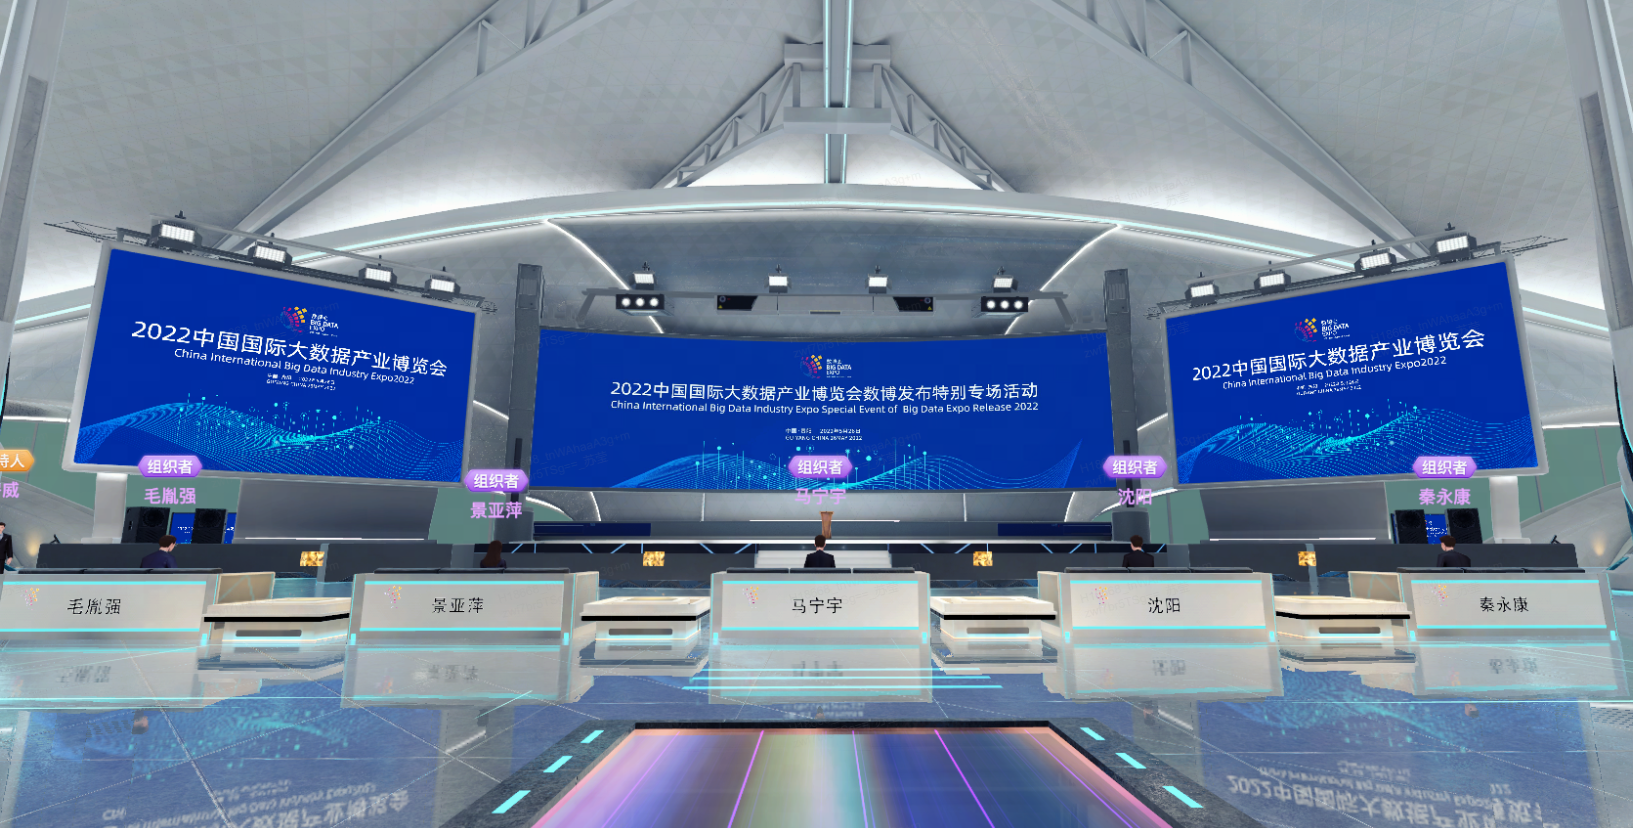 这是一个现代化的会议室内景，配有大型屏幕和讲台，显示着2022年的信息，座位整齐排列，科技感十足。